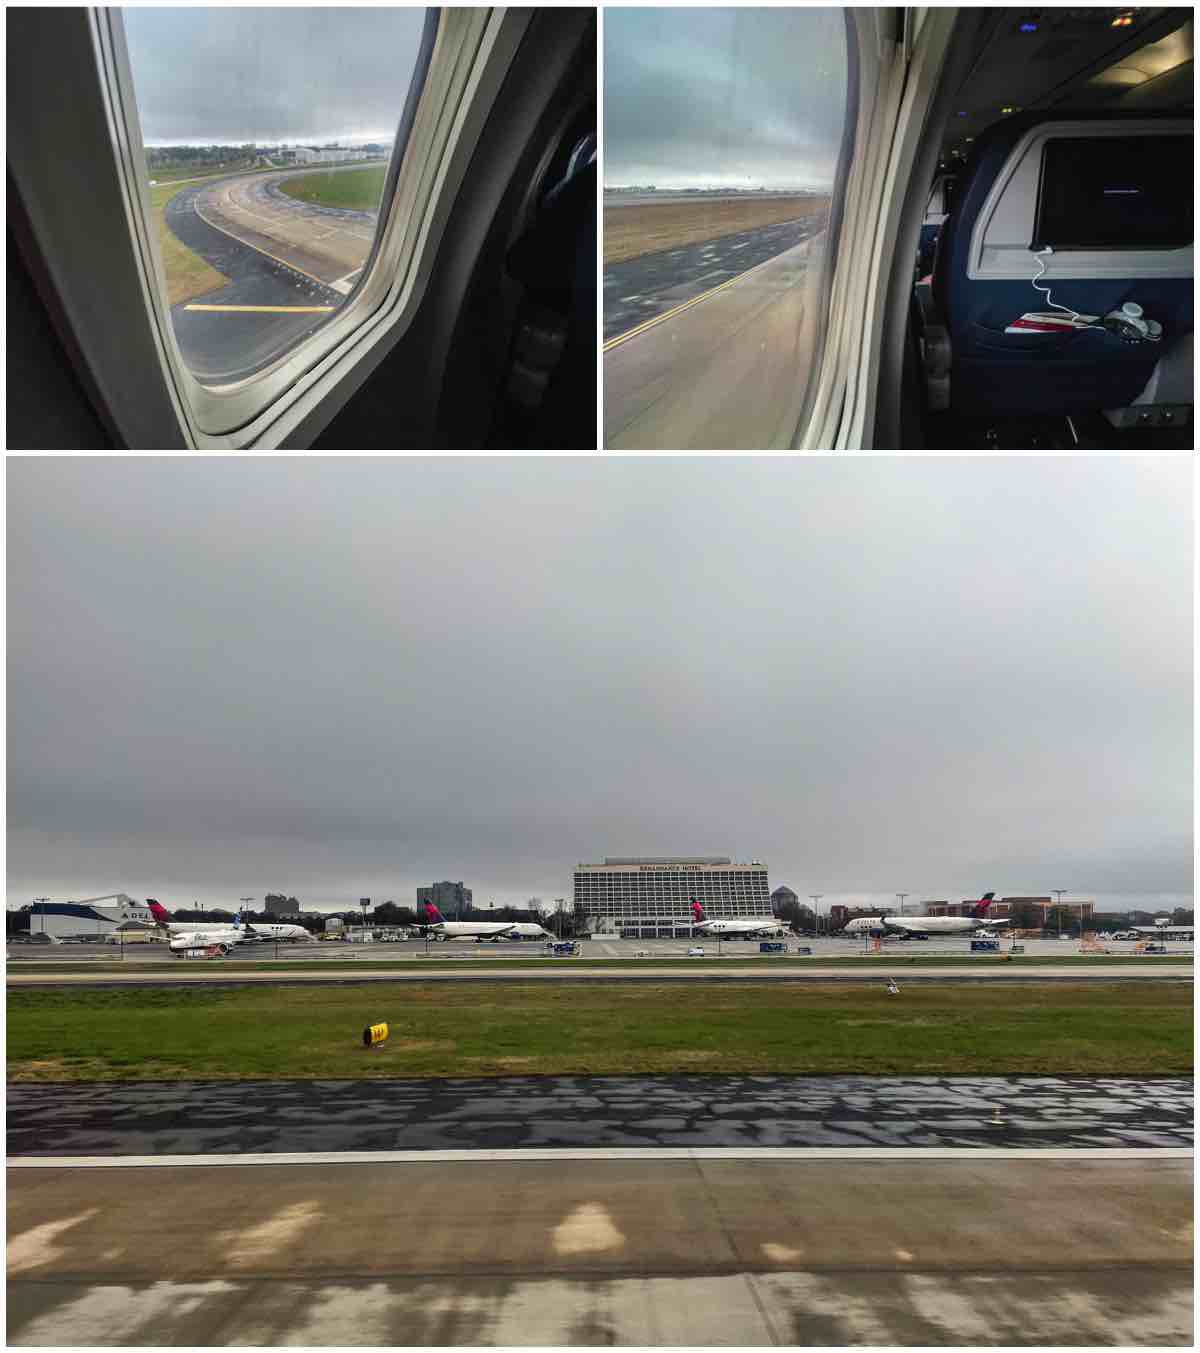 Delta 757-300 arrival at ATL